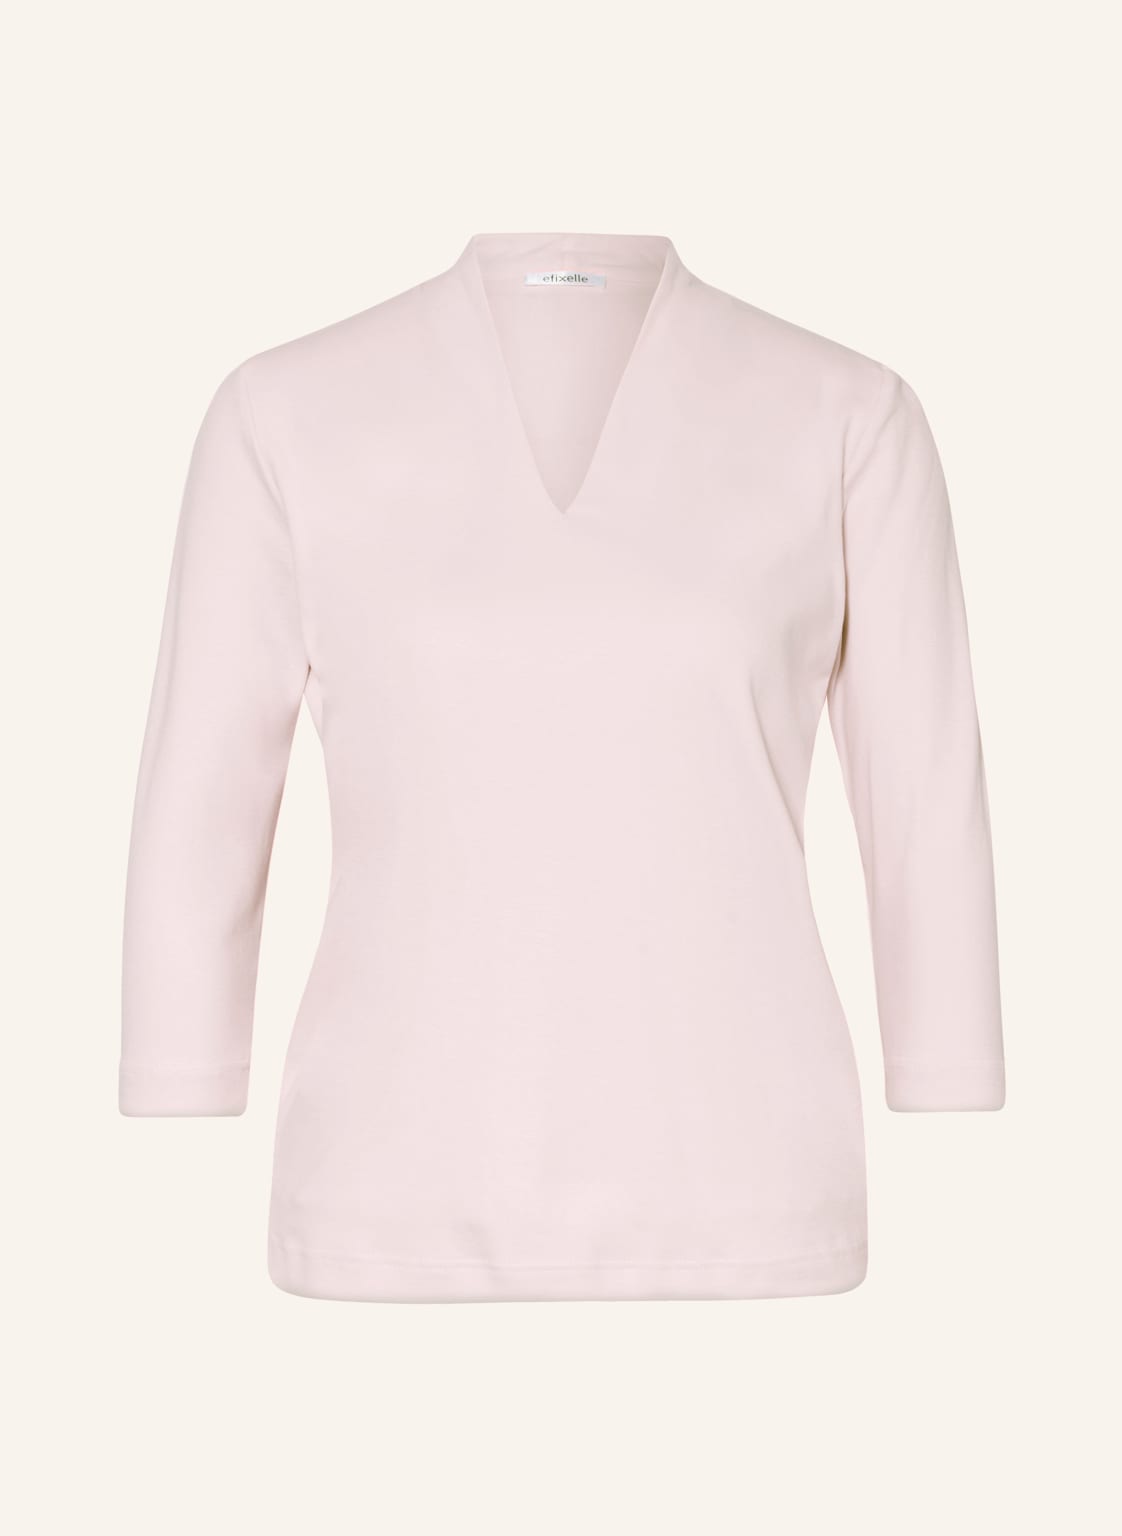 Efixelle Shirt Mit 3/4-Arm rosa von efixelle